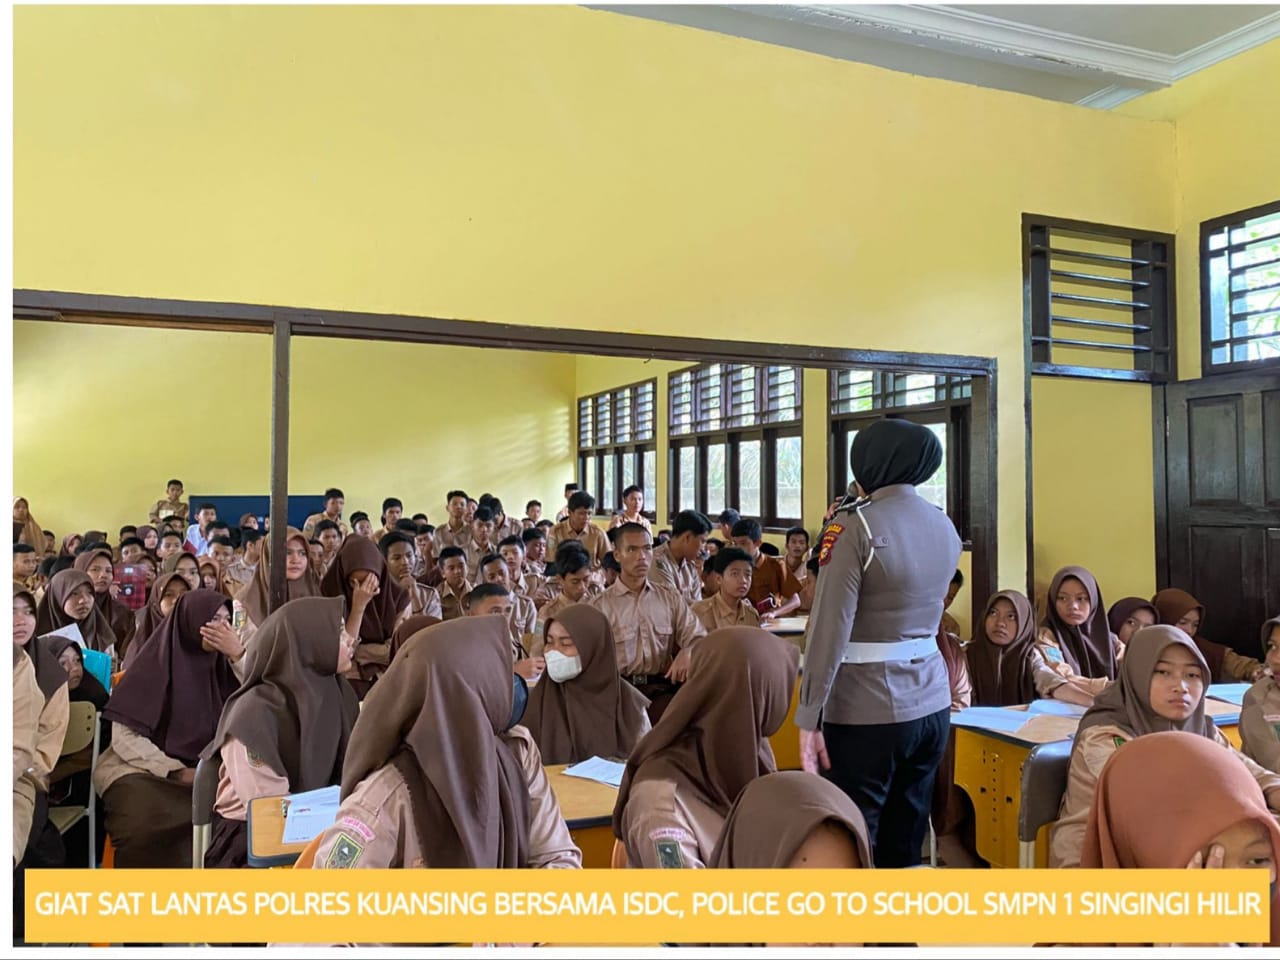 SatLantas Polres Kuansing Police Goes To School, Perkenalkan Aplikasi Sitalam Manis Presisi 